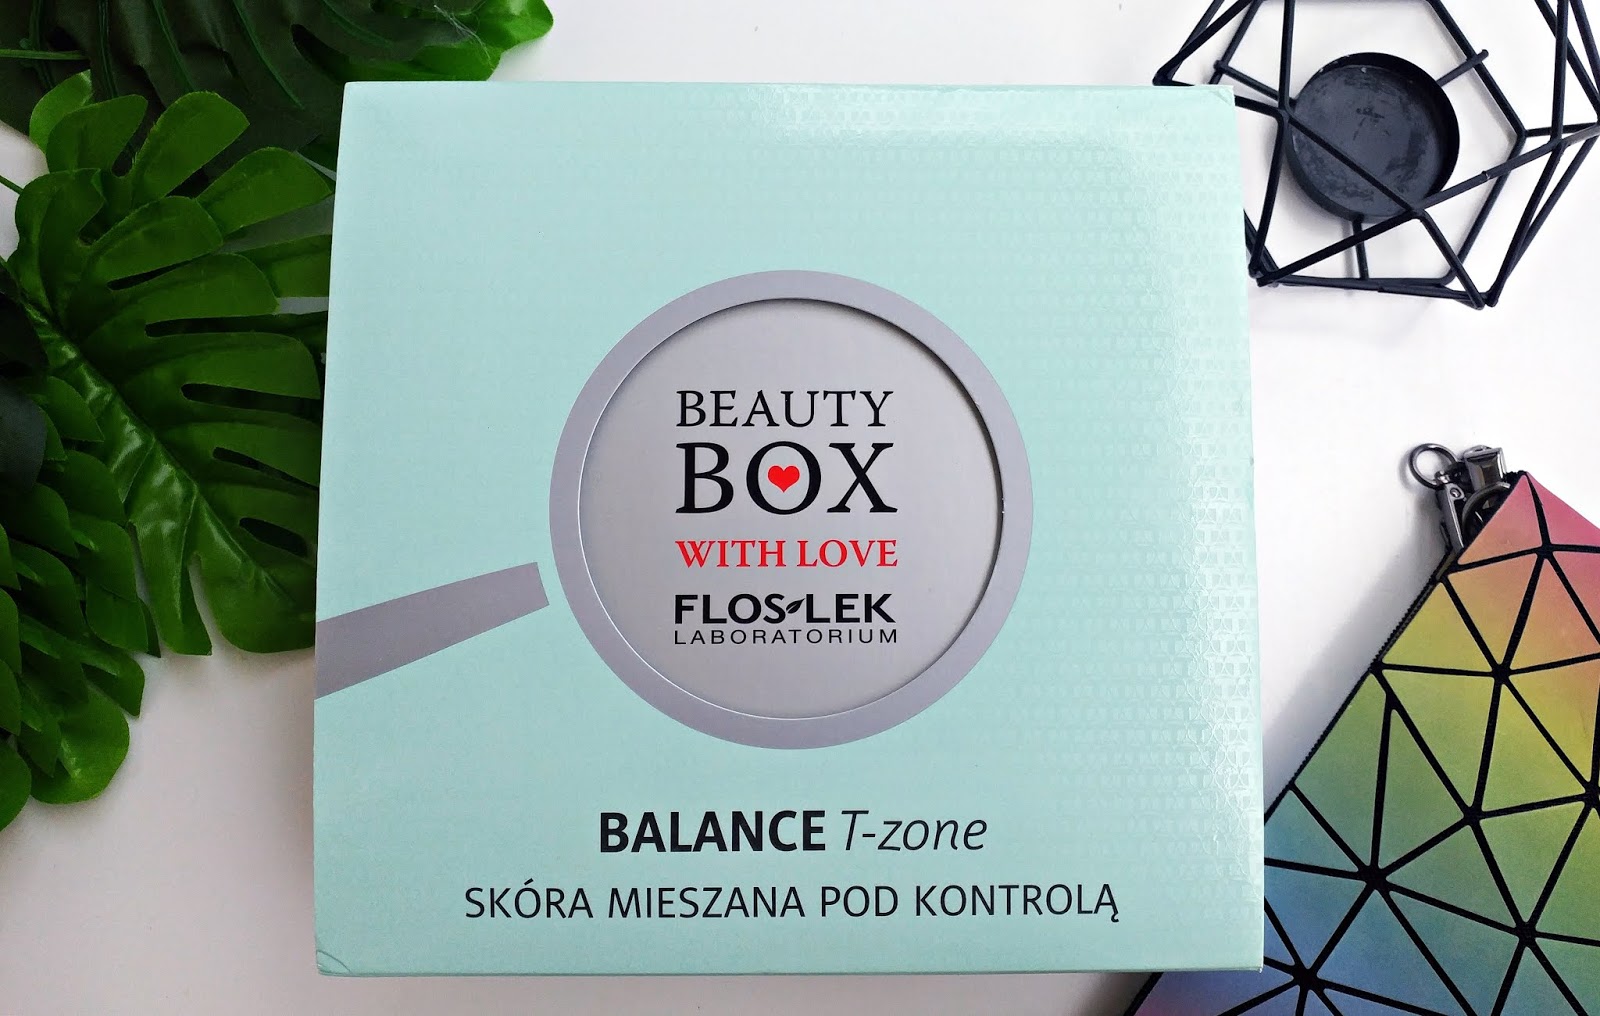 Beauty BOX with love - FlosLek  Balance T-zone - Skóra Mieszana pod kontrolą |   Zuzka Pisze